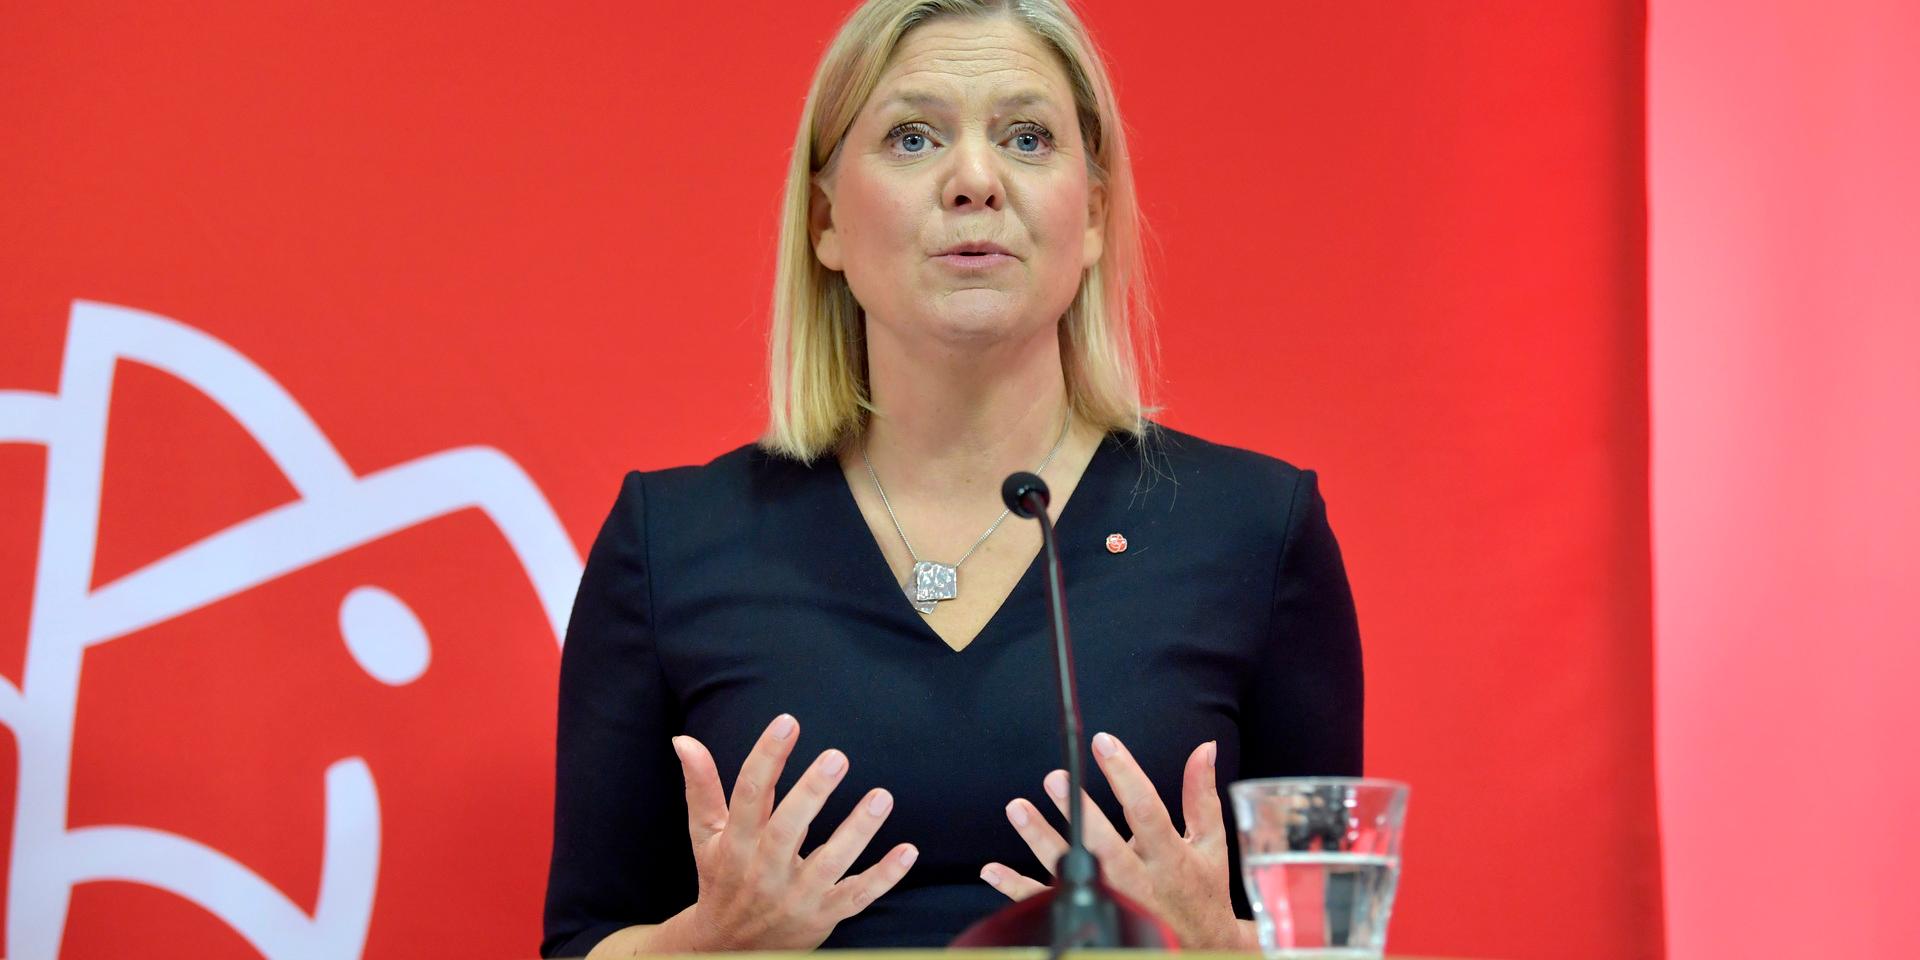 Finansminister Magdalena Andersson (S) väntas bli vald till ny S-ledare. Frågan är om hon även kan bli godkänd som ny statsminister av riksdagen och när det kan ske. Arkivbild.